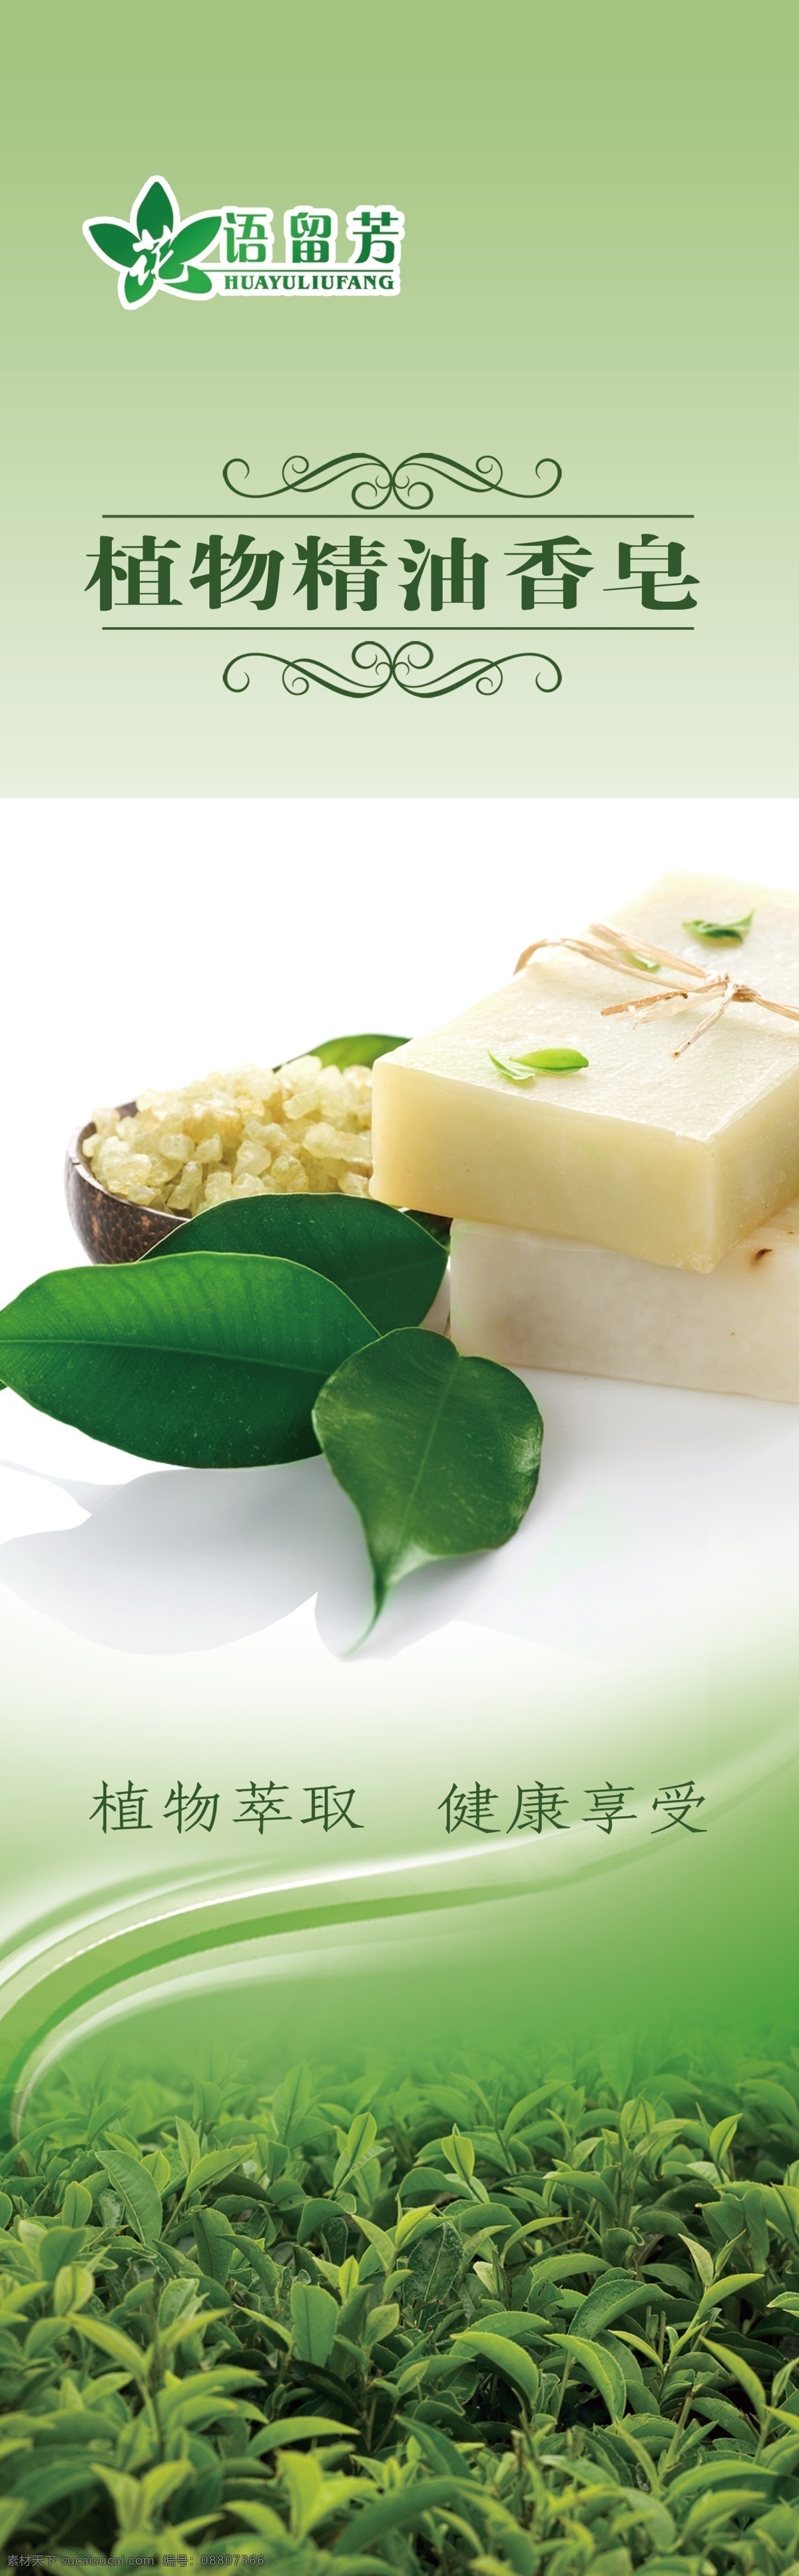 植物精油香皂 植物香皂 皂花 化妆品 天然 自然 广告设计模板 源文件